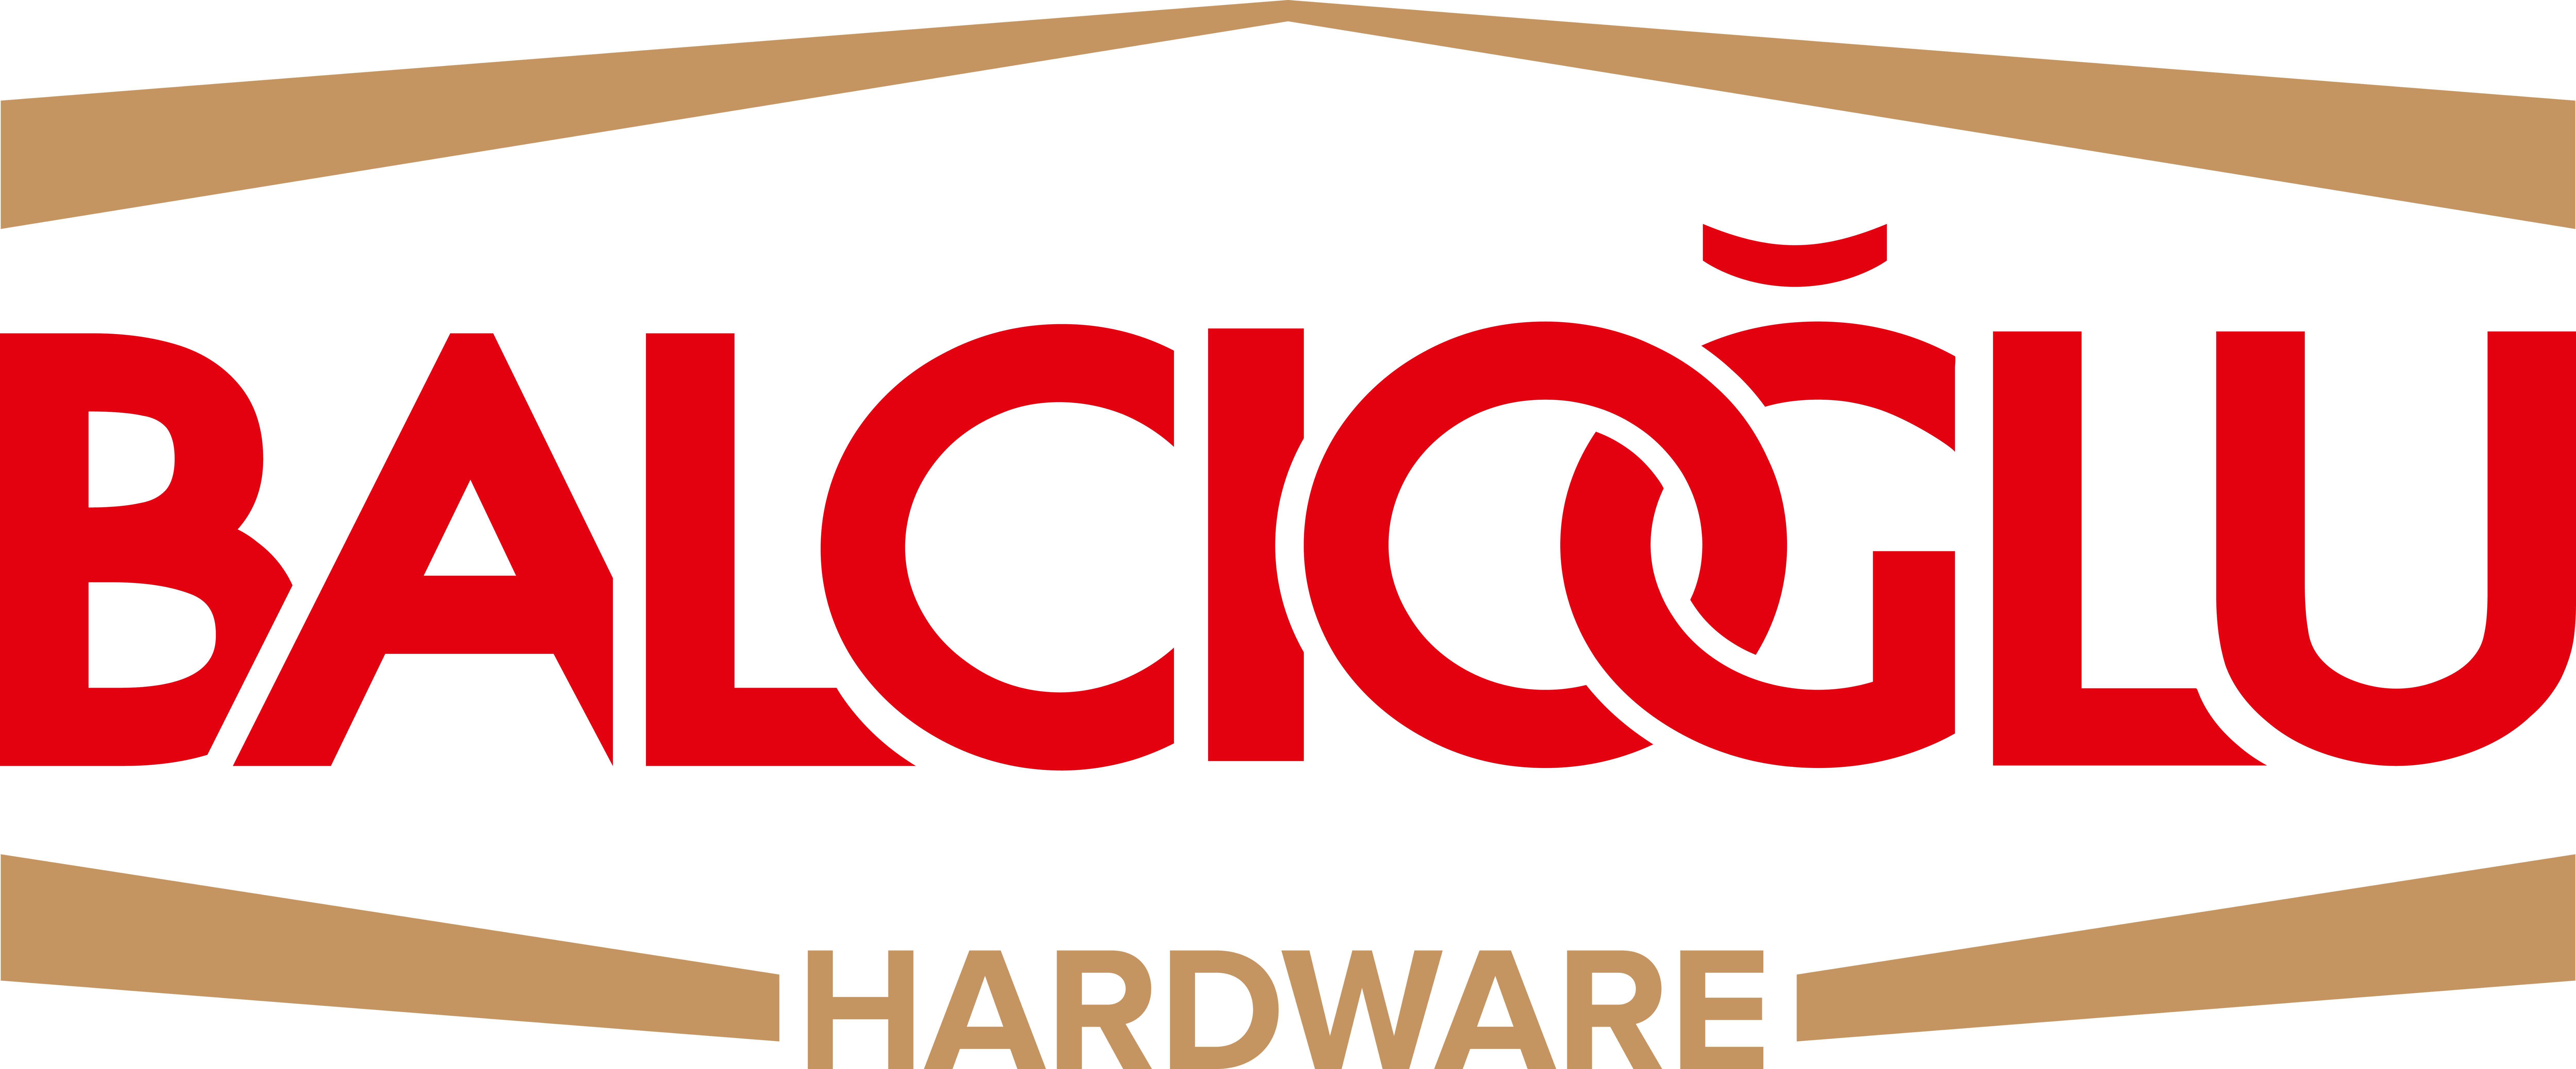 balcioglu_logo-hardware-2